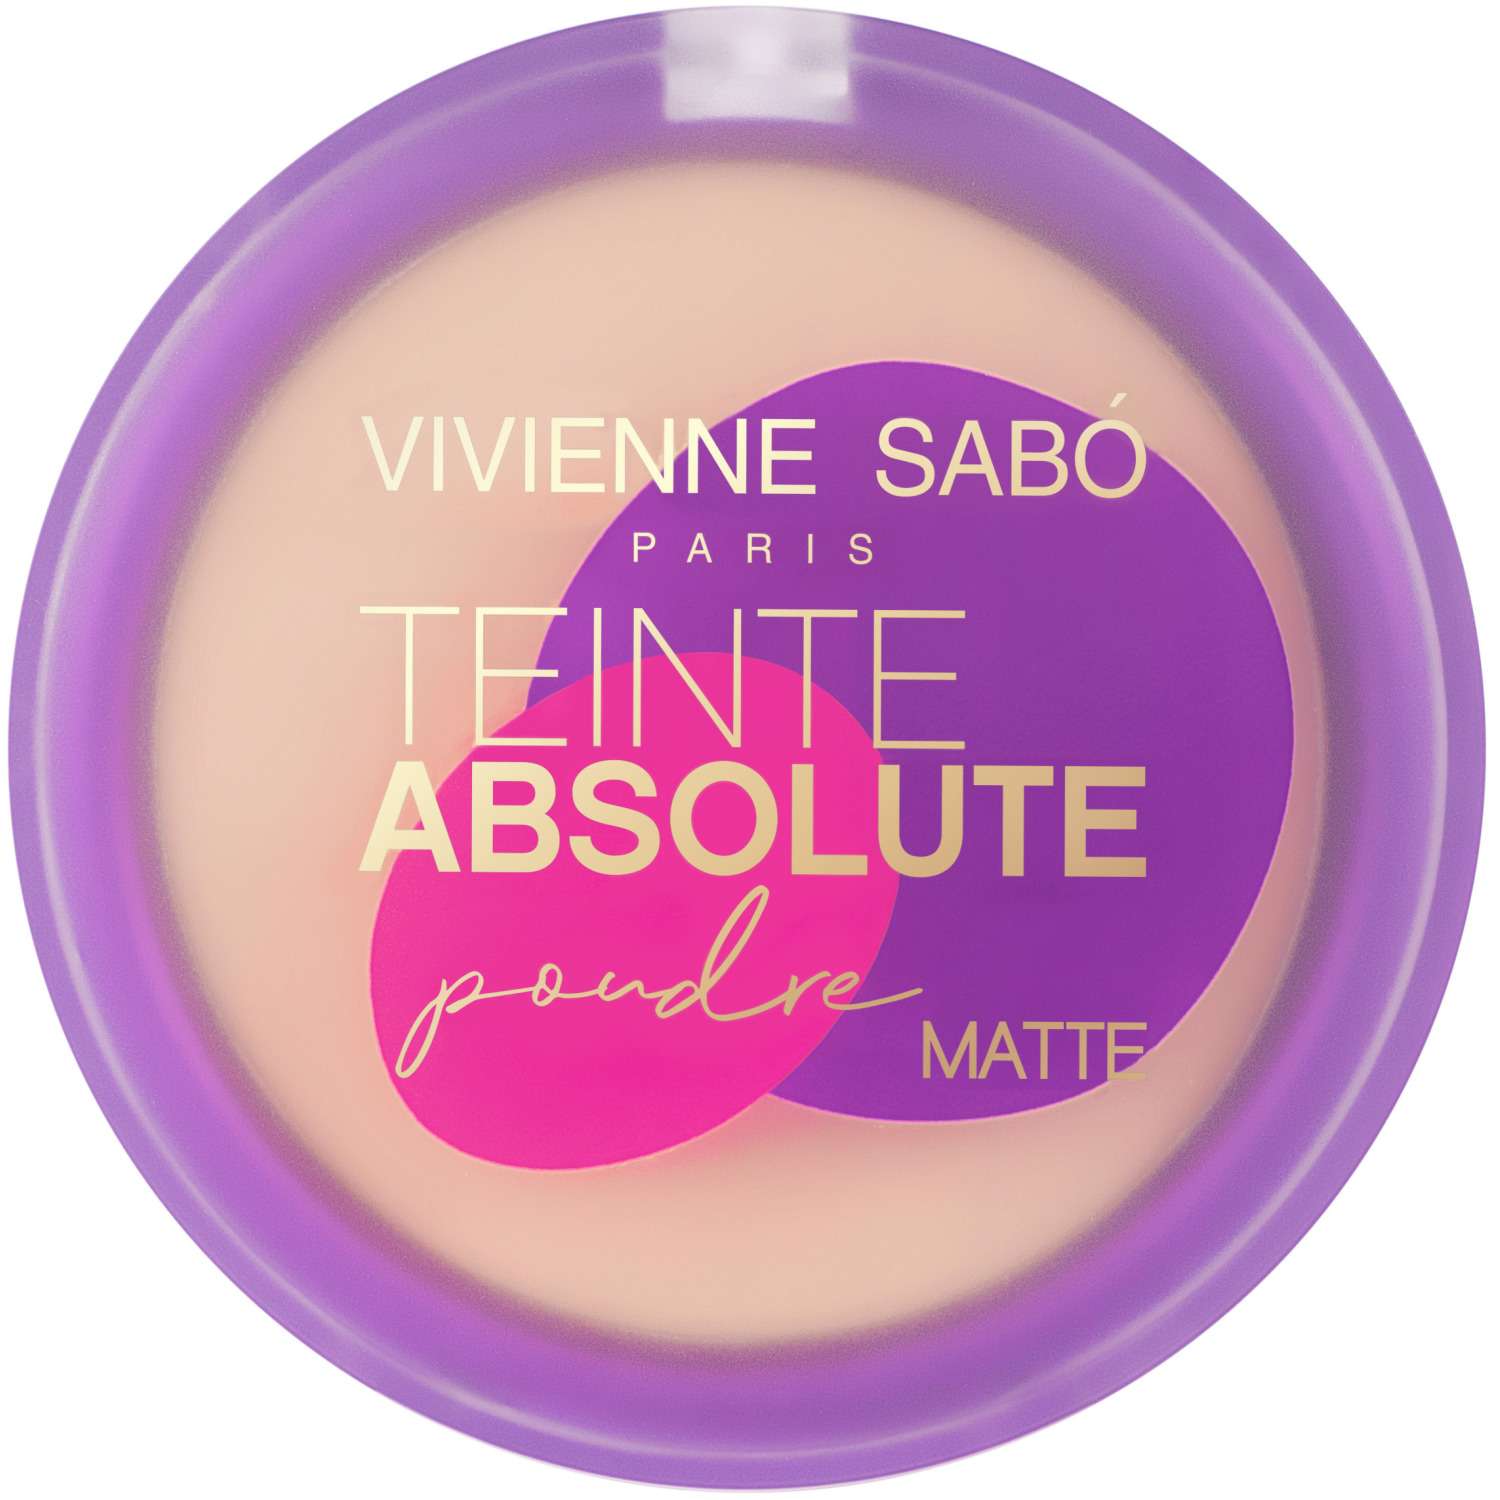 Пудра Vivienne Sabo Teinte Absolute matte подходит для проблемной кожи тон 03 светло-персиковый 6 г - фото 1